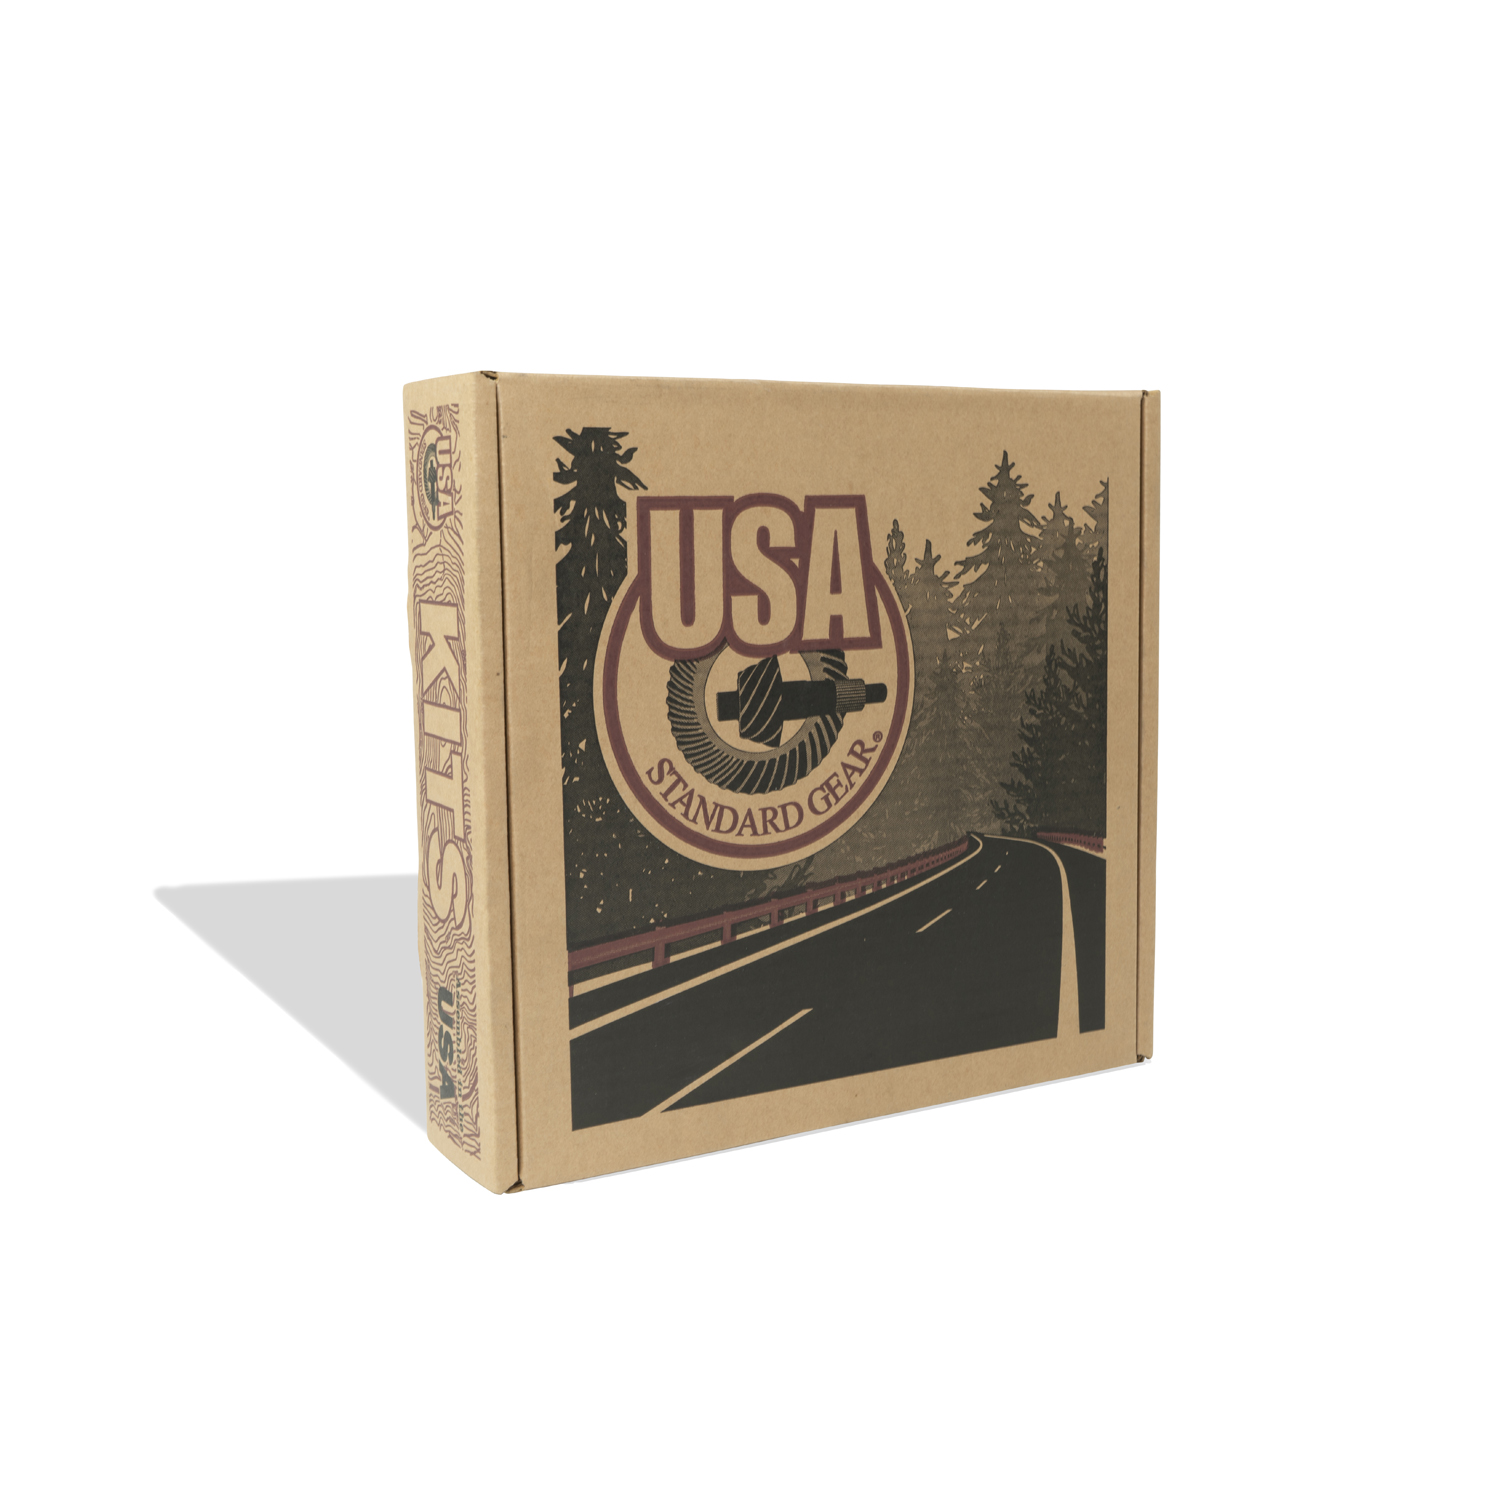 USA Standard Bearing kit for Spicer 44, 19 spline